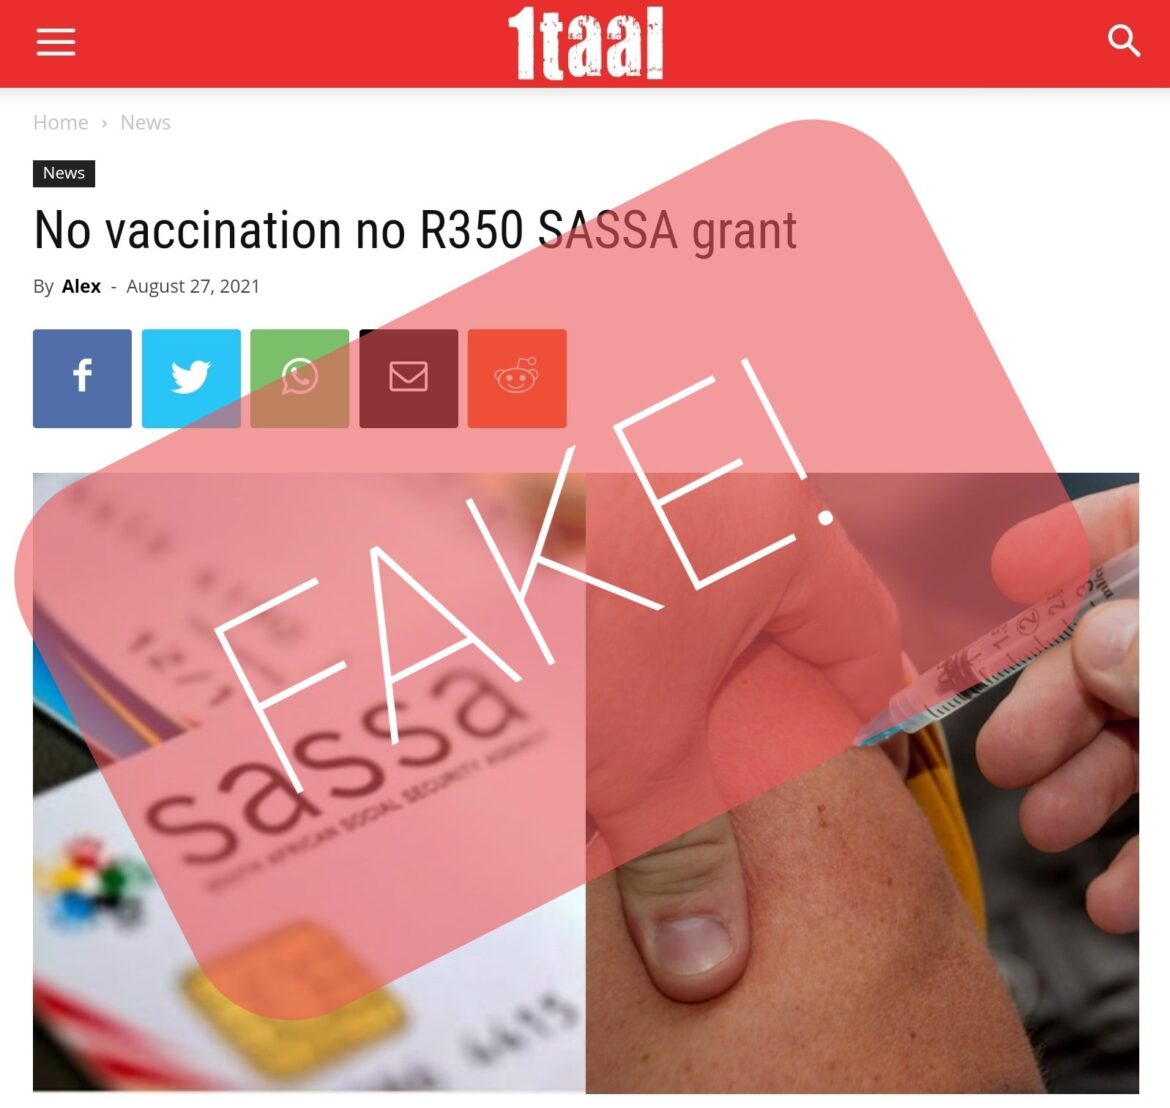 No vaccine no grants